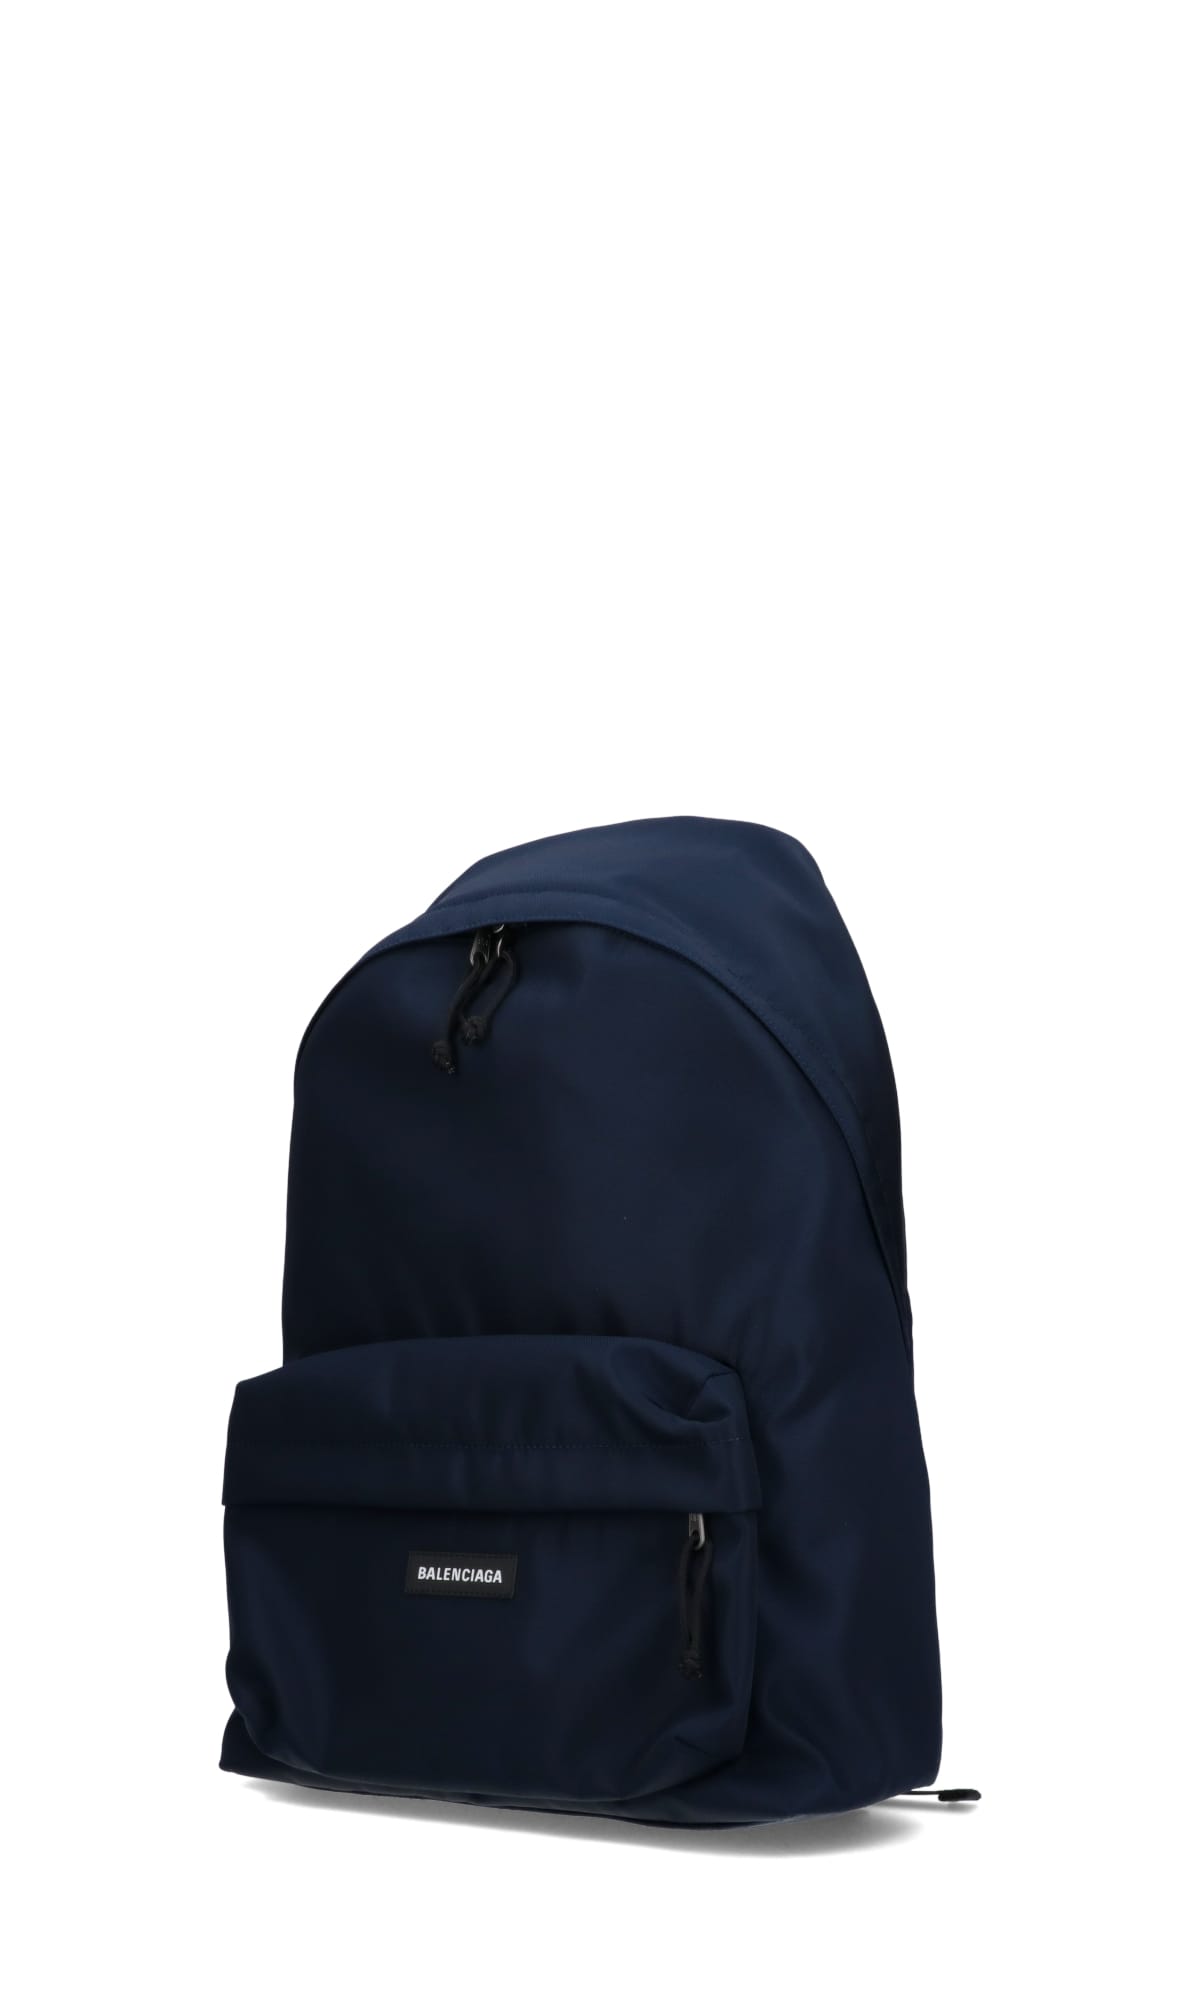 balenciaga explorer backpack